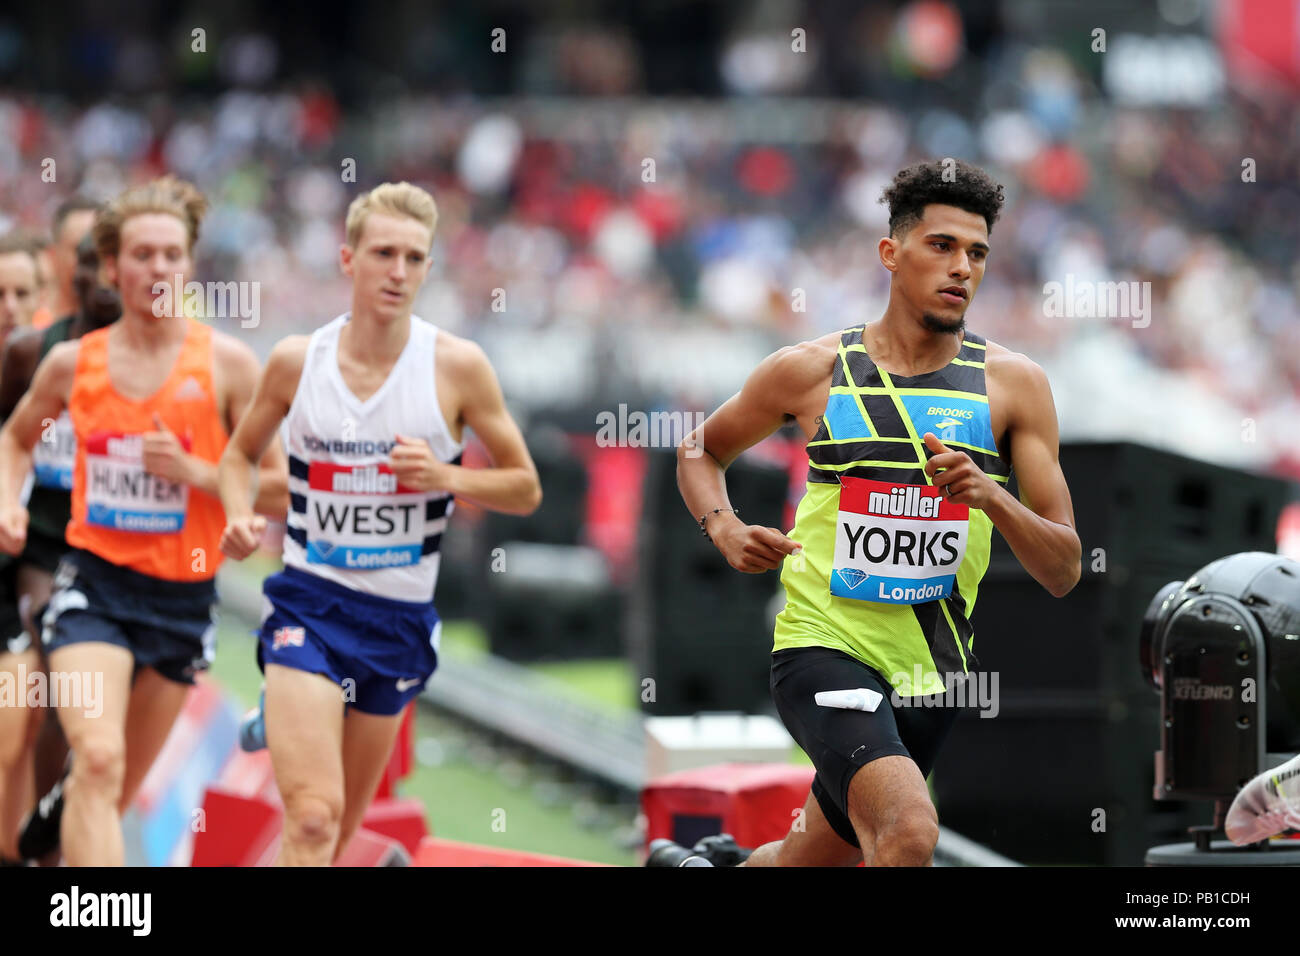 Izaic YORKS (Vereinigte Staaten von Amerika) in der Männer 1500 m-Finale bei den 2018 konkurrieren, IAAF Diamond League, Jubiläum Spiele, Queen Elizabeth Olympic Park, Stratford, London, UK. Stockfoto